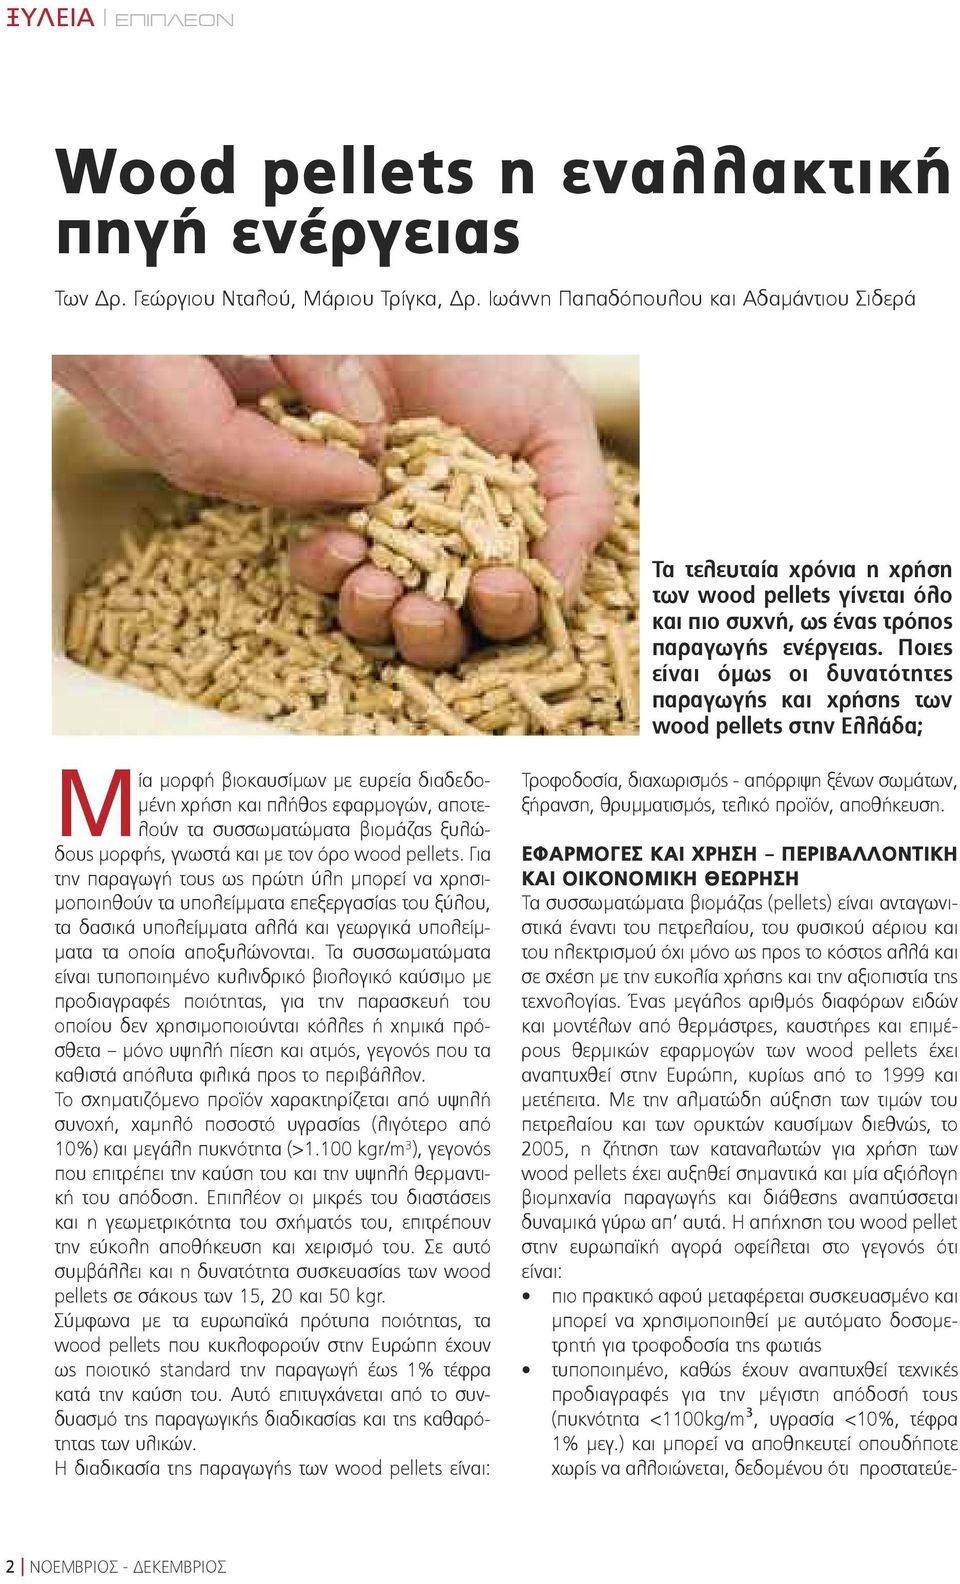 Ποιες είναι όμως οι δυνατότητες παραγωγής και χρήσης των wood pellets στην Ελλάδα; Mία μορφή βιοκαυσίμων με ευρεία διαδεδομένη χρήση και πλήθος εφαρμογών, αποτελούν τα συσσωματώματα βιομάζας ξυλώδους